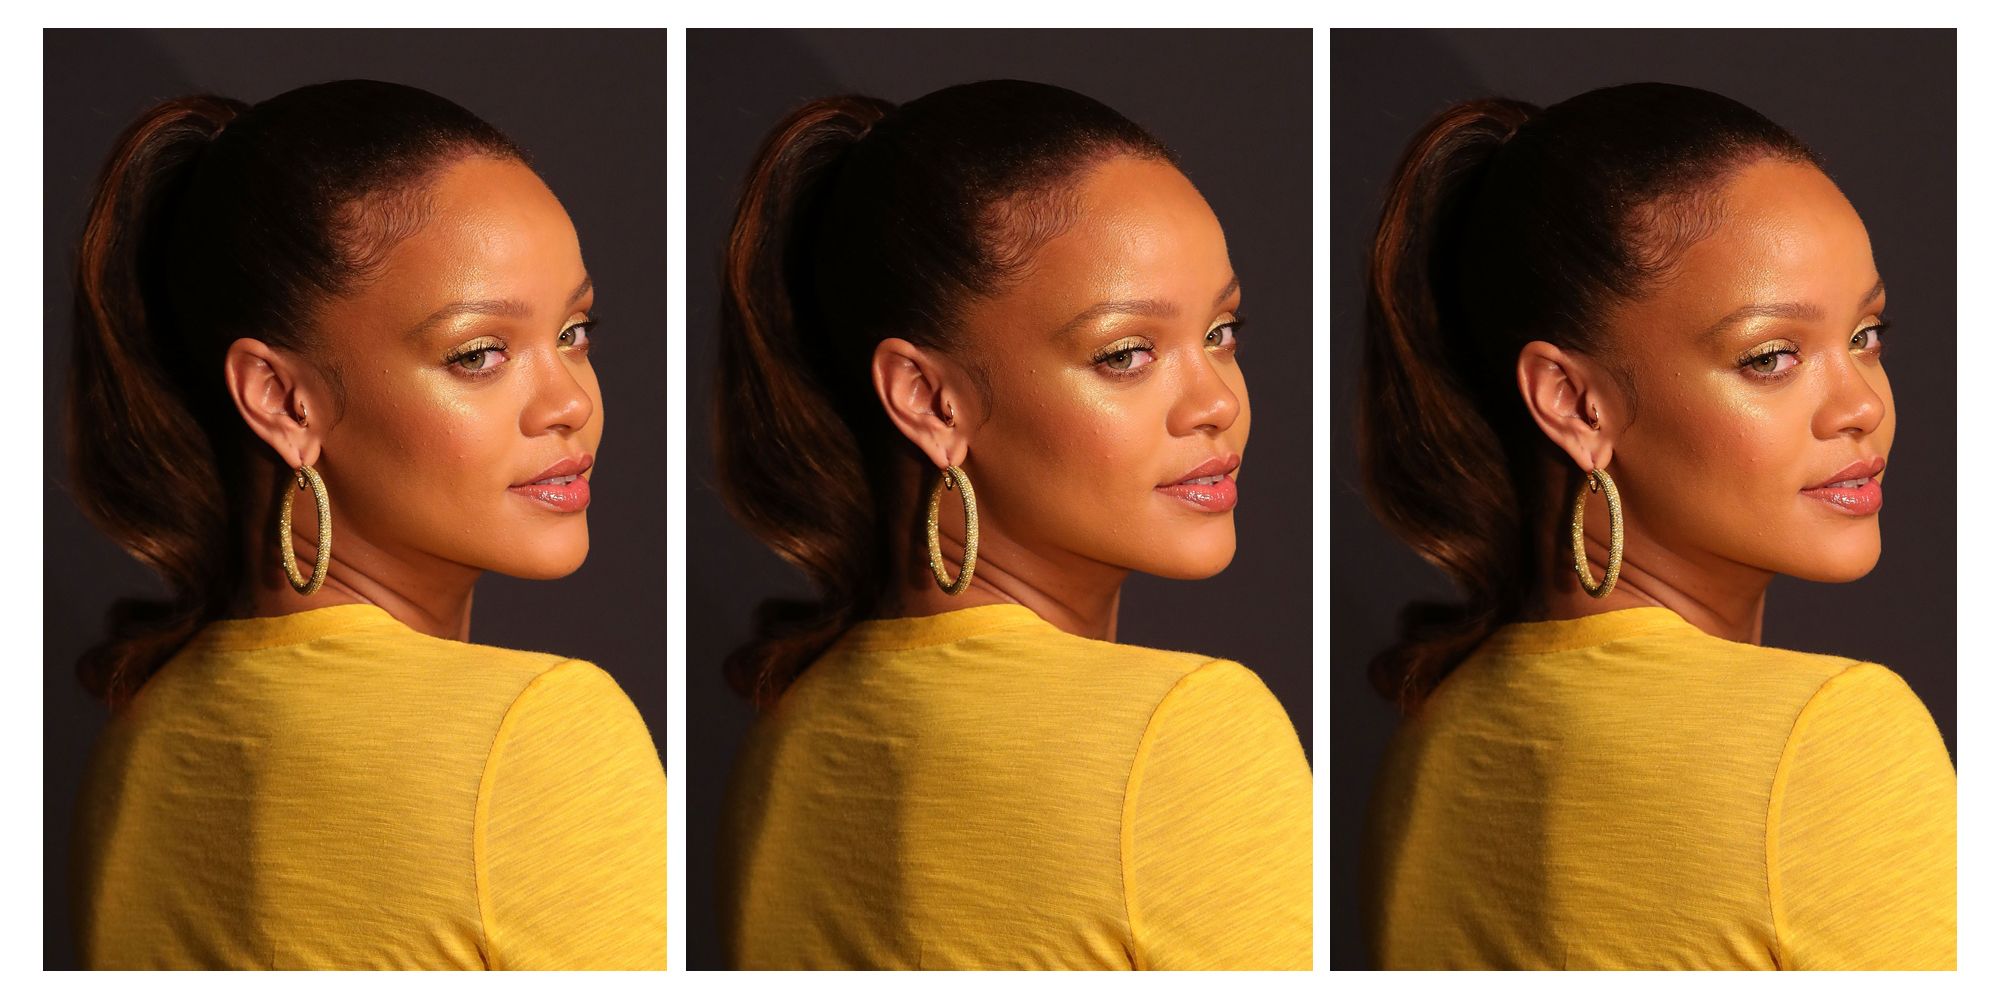 Rihanna l'extravagante ose le bonnet bibi en été, top ou flop ? - Closer